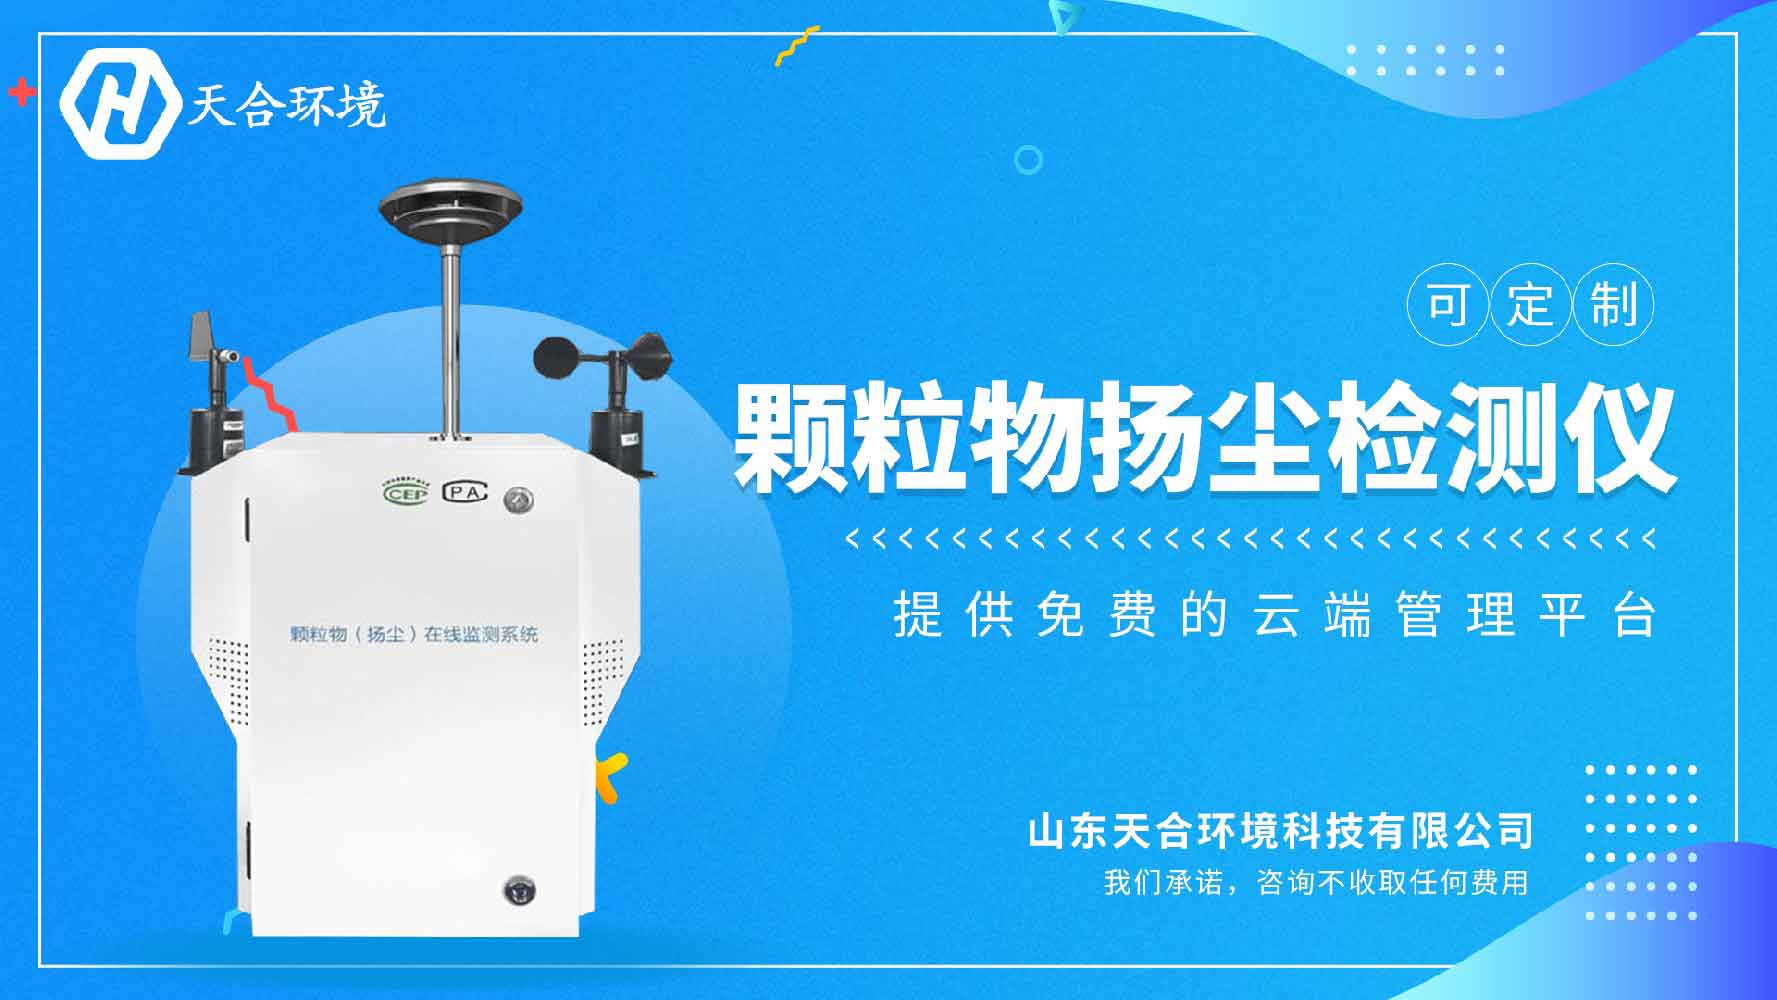 “市民随申气象台”年内上线用户可掌握上海任意地点的天气